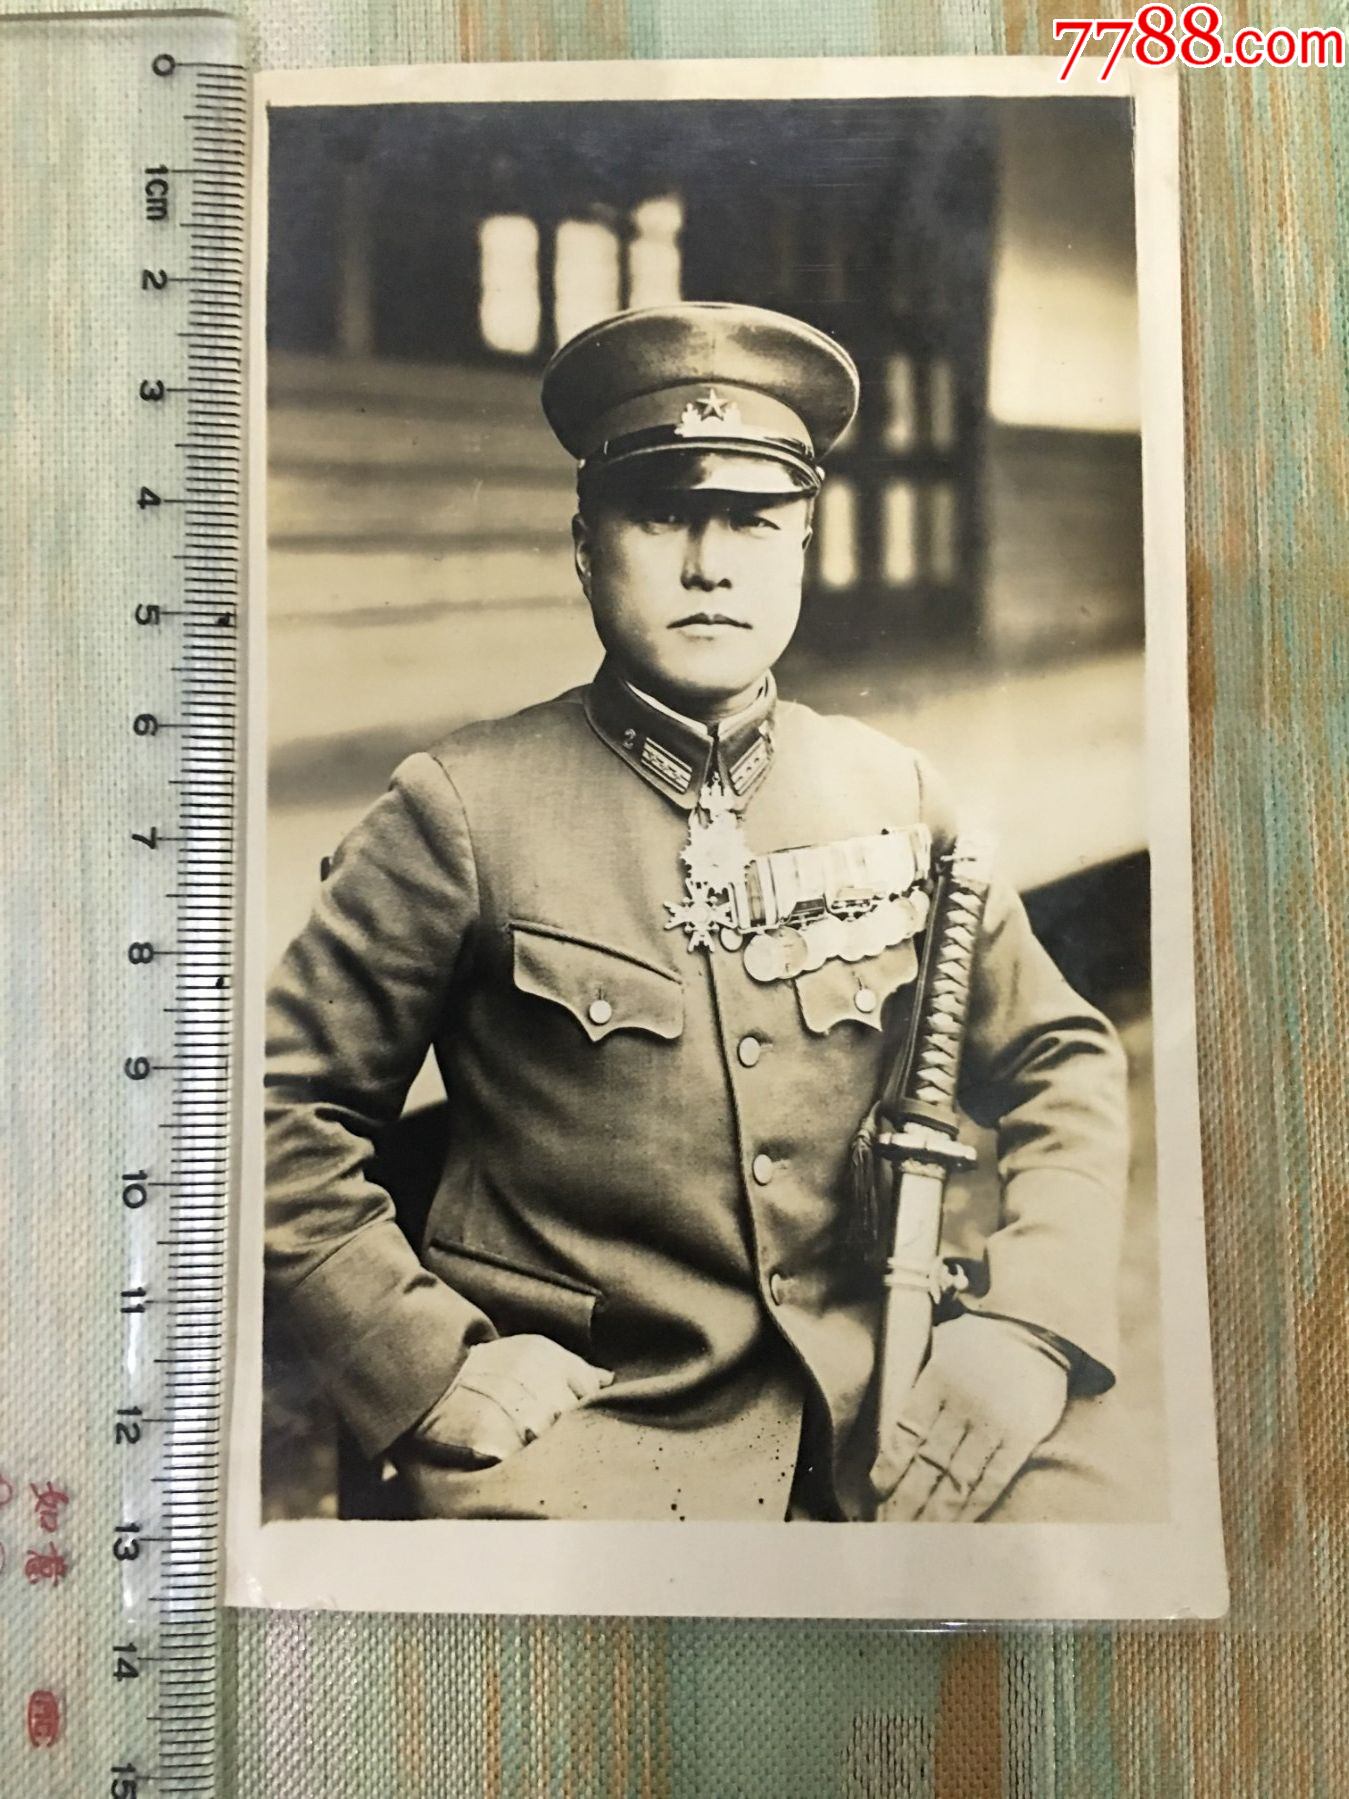 日军照片 大佐图片